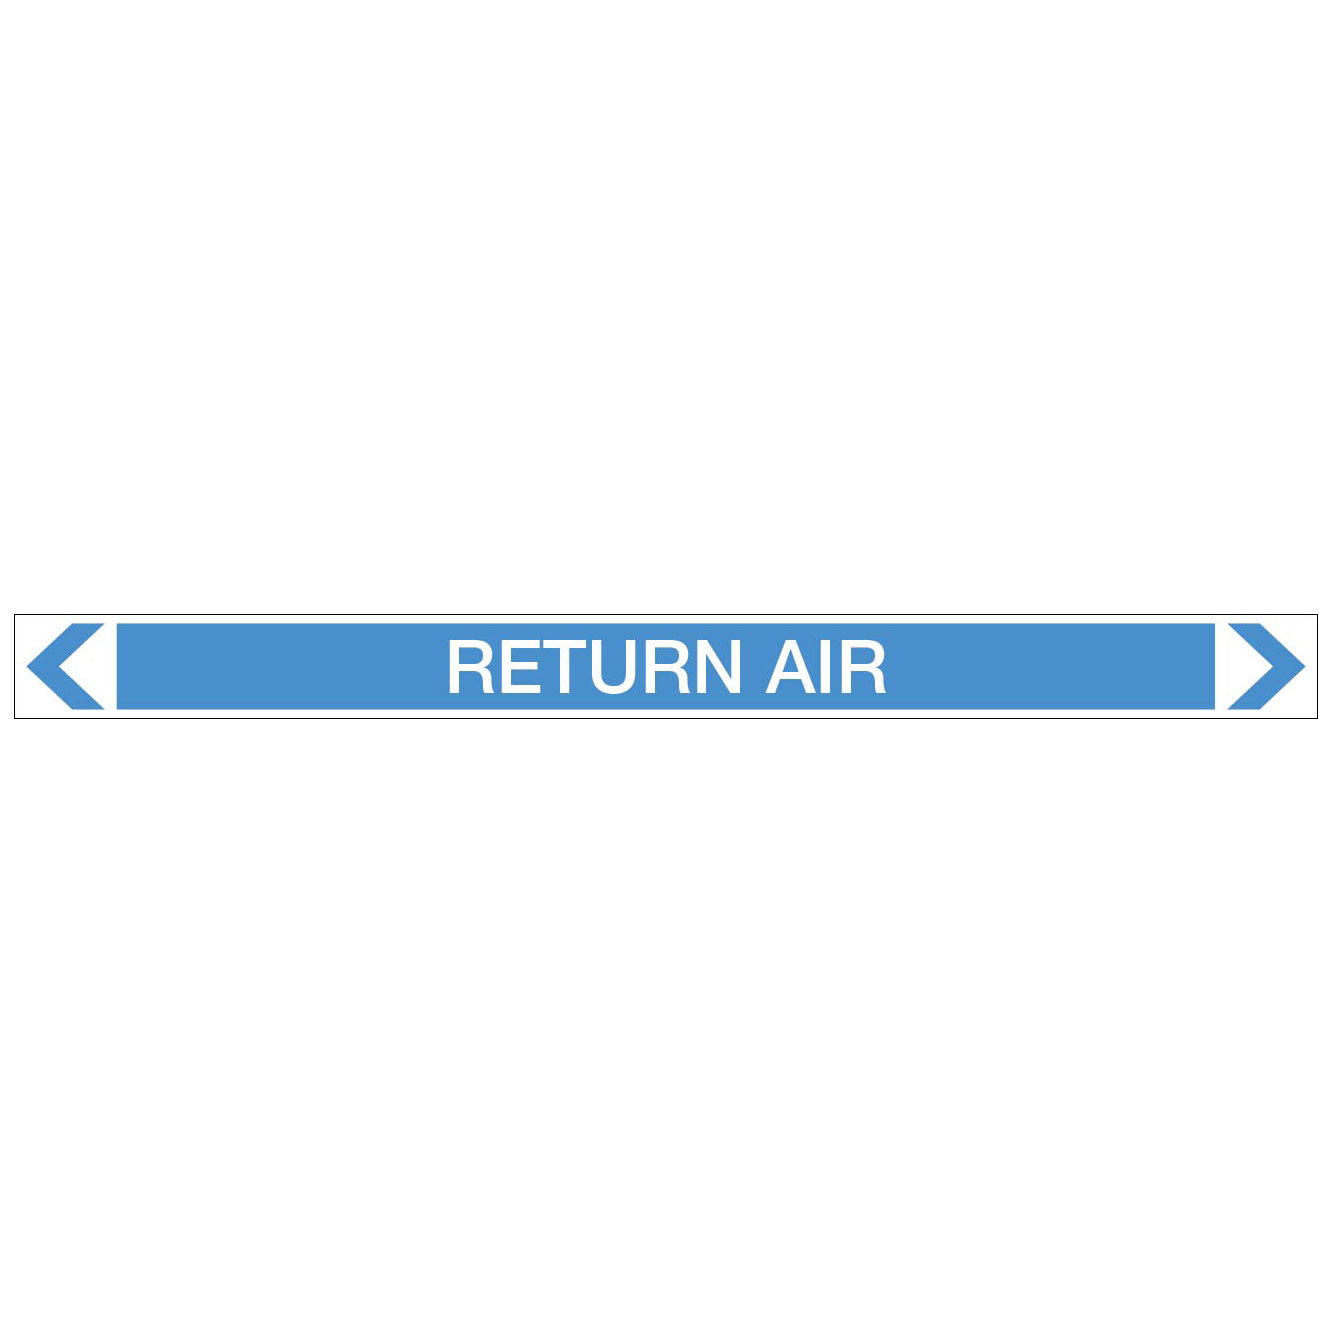 Air - Return Air - Pipe Marker Sticker